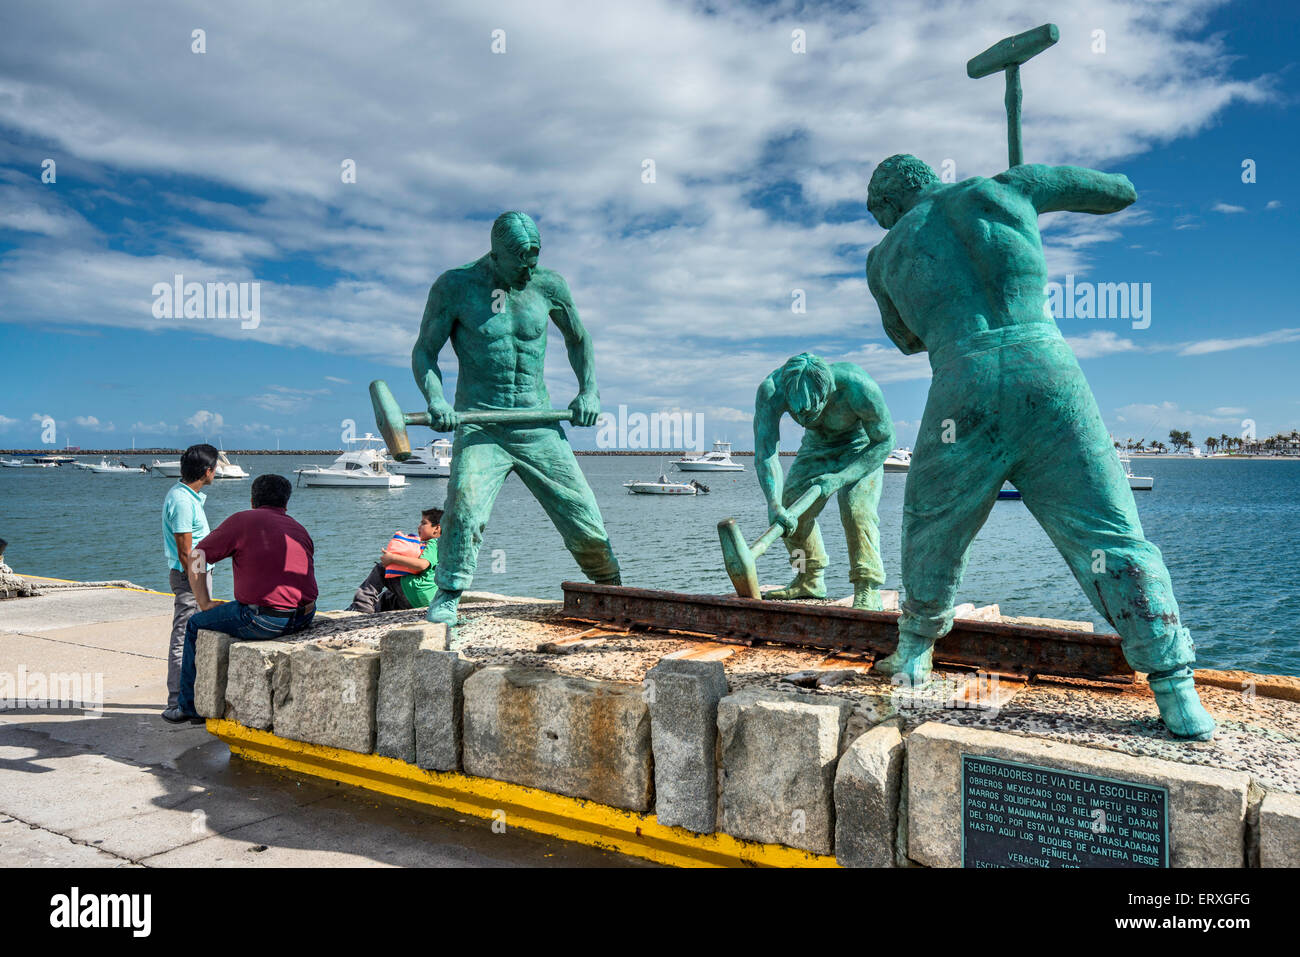 Sembradores de Via de la Escollera (Sowers of the Jetty Track), sculpture by Humberto Peraza, jetty in port of Veracruz, Mexico Stock Photo